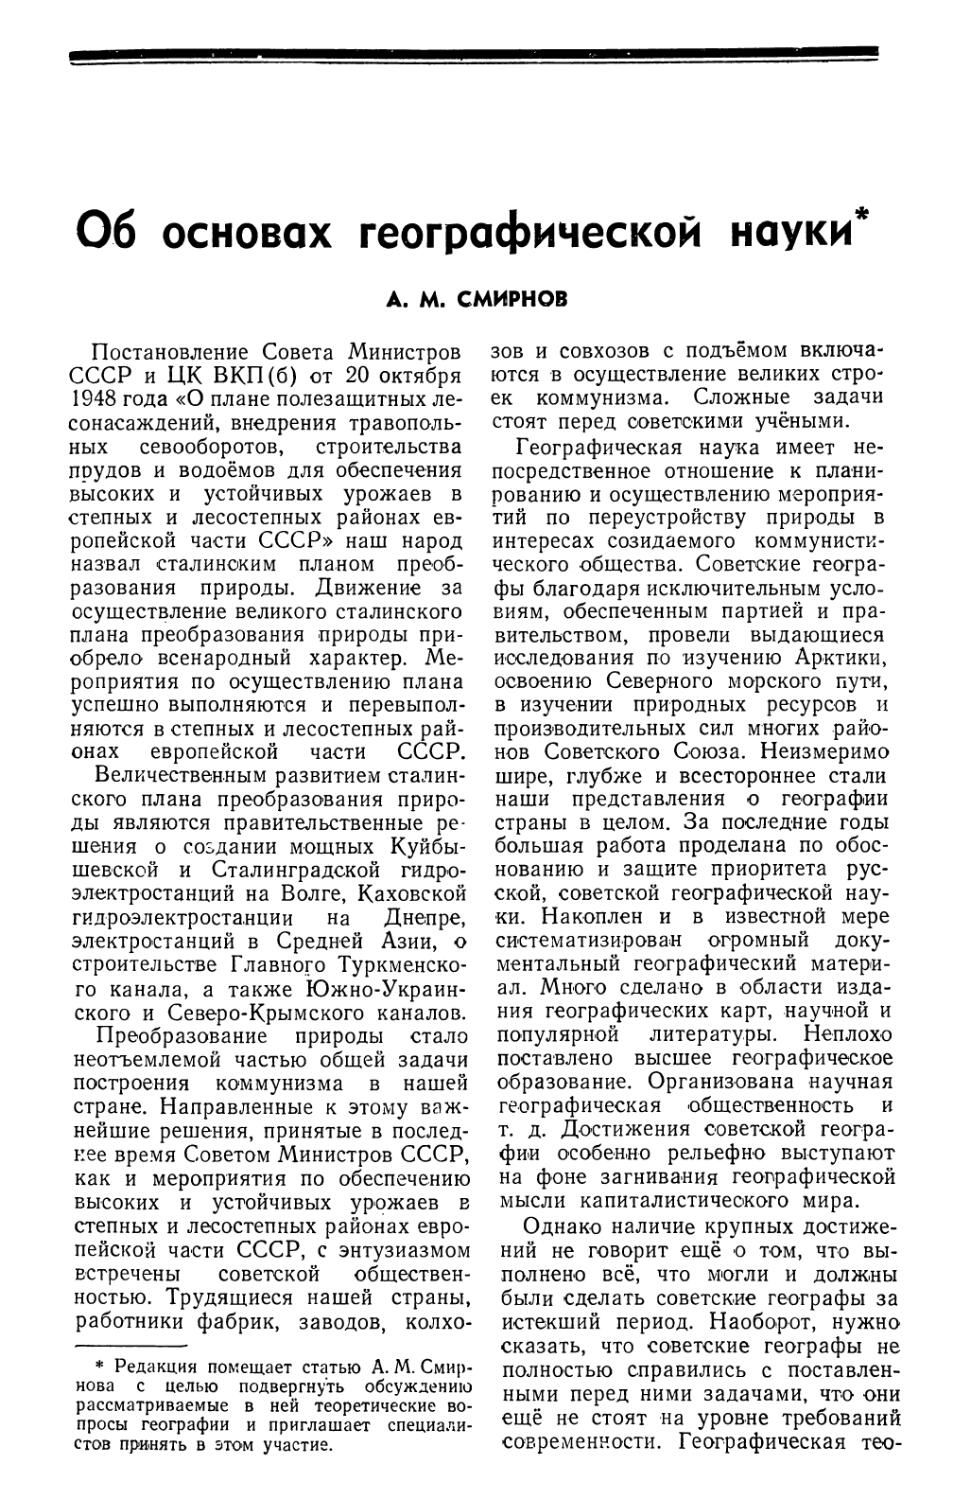 А. М. Смирнов — Об основах географической науки